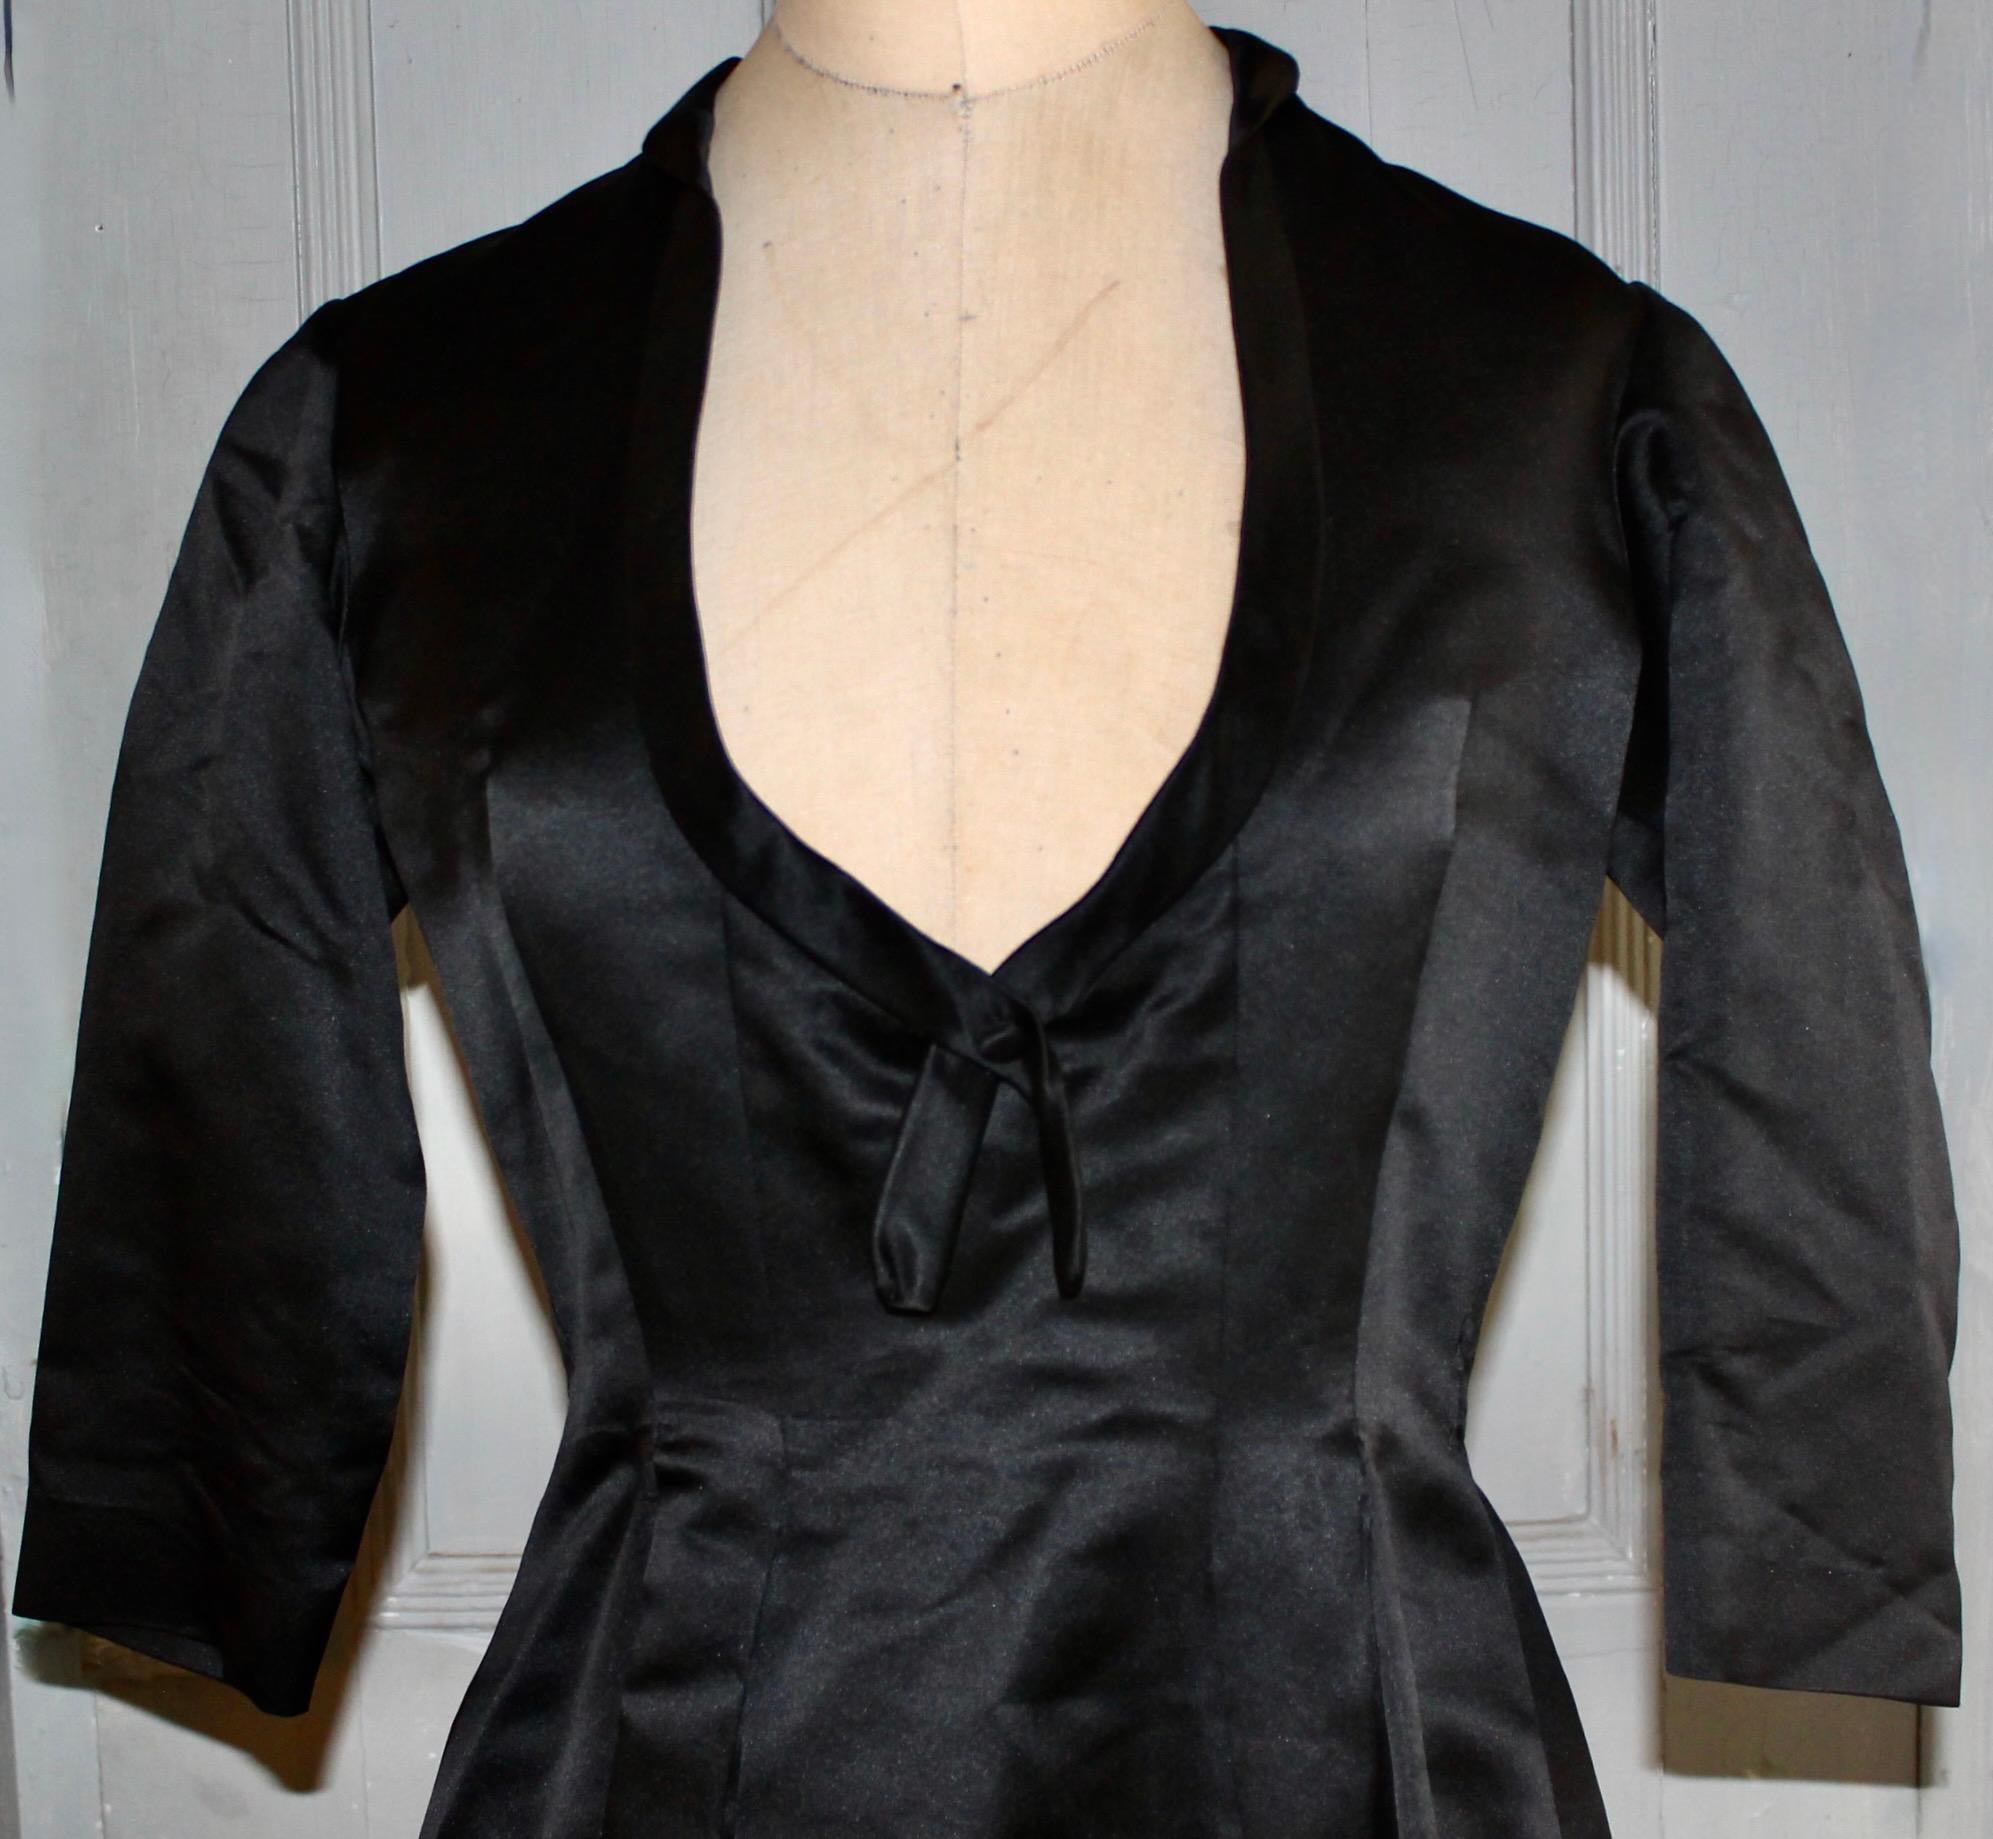 Ein schwarzes Abendkleid aus Seide und Satin von Christian Dior &New York (gegründet 1948). Mit einem Christian Dior Original made in USA Christian Dior-New York Label, (50er Jahre Labels) und einem Nan Duskin Philadelphia Label. Ungefähre Größe 6-8